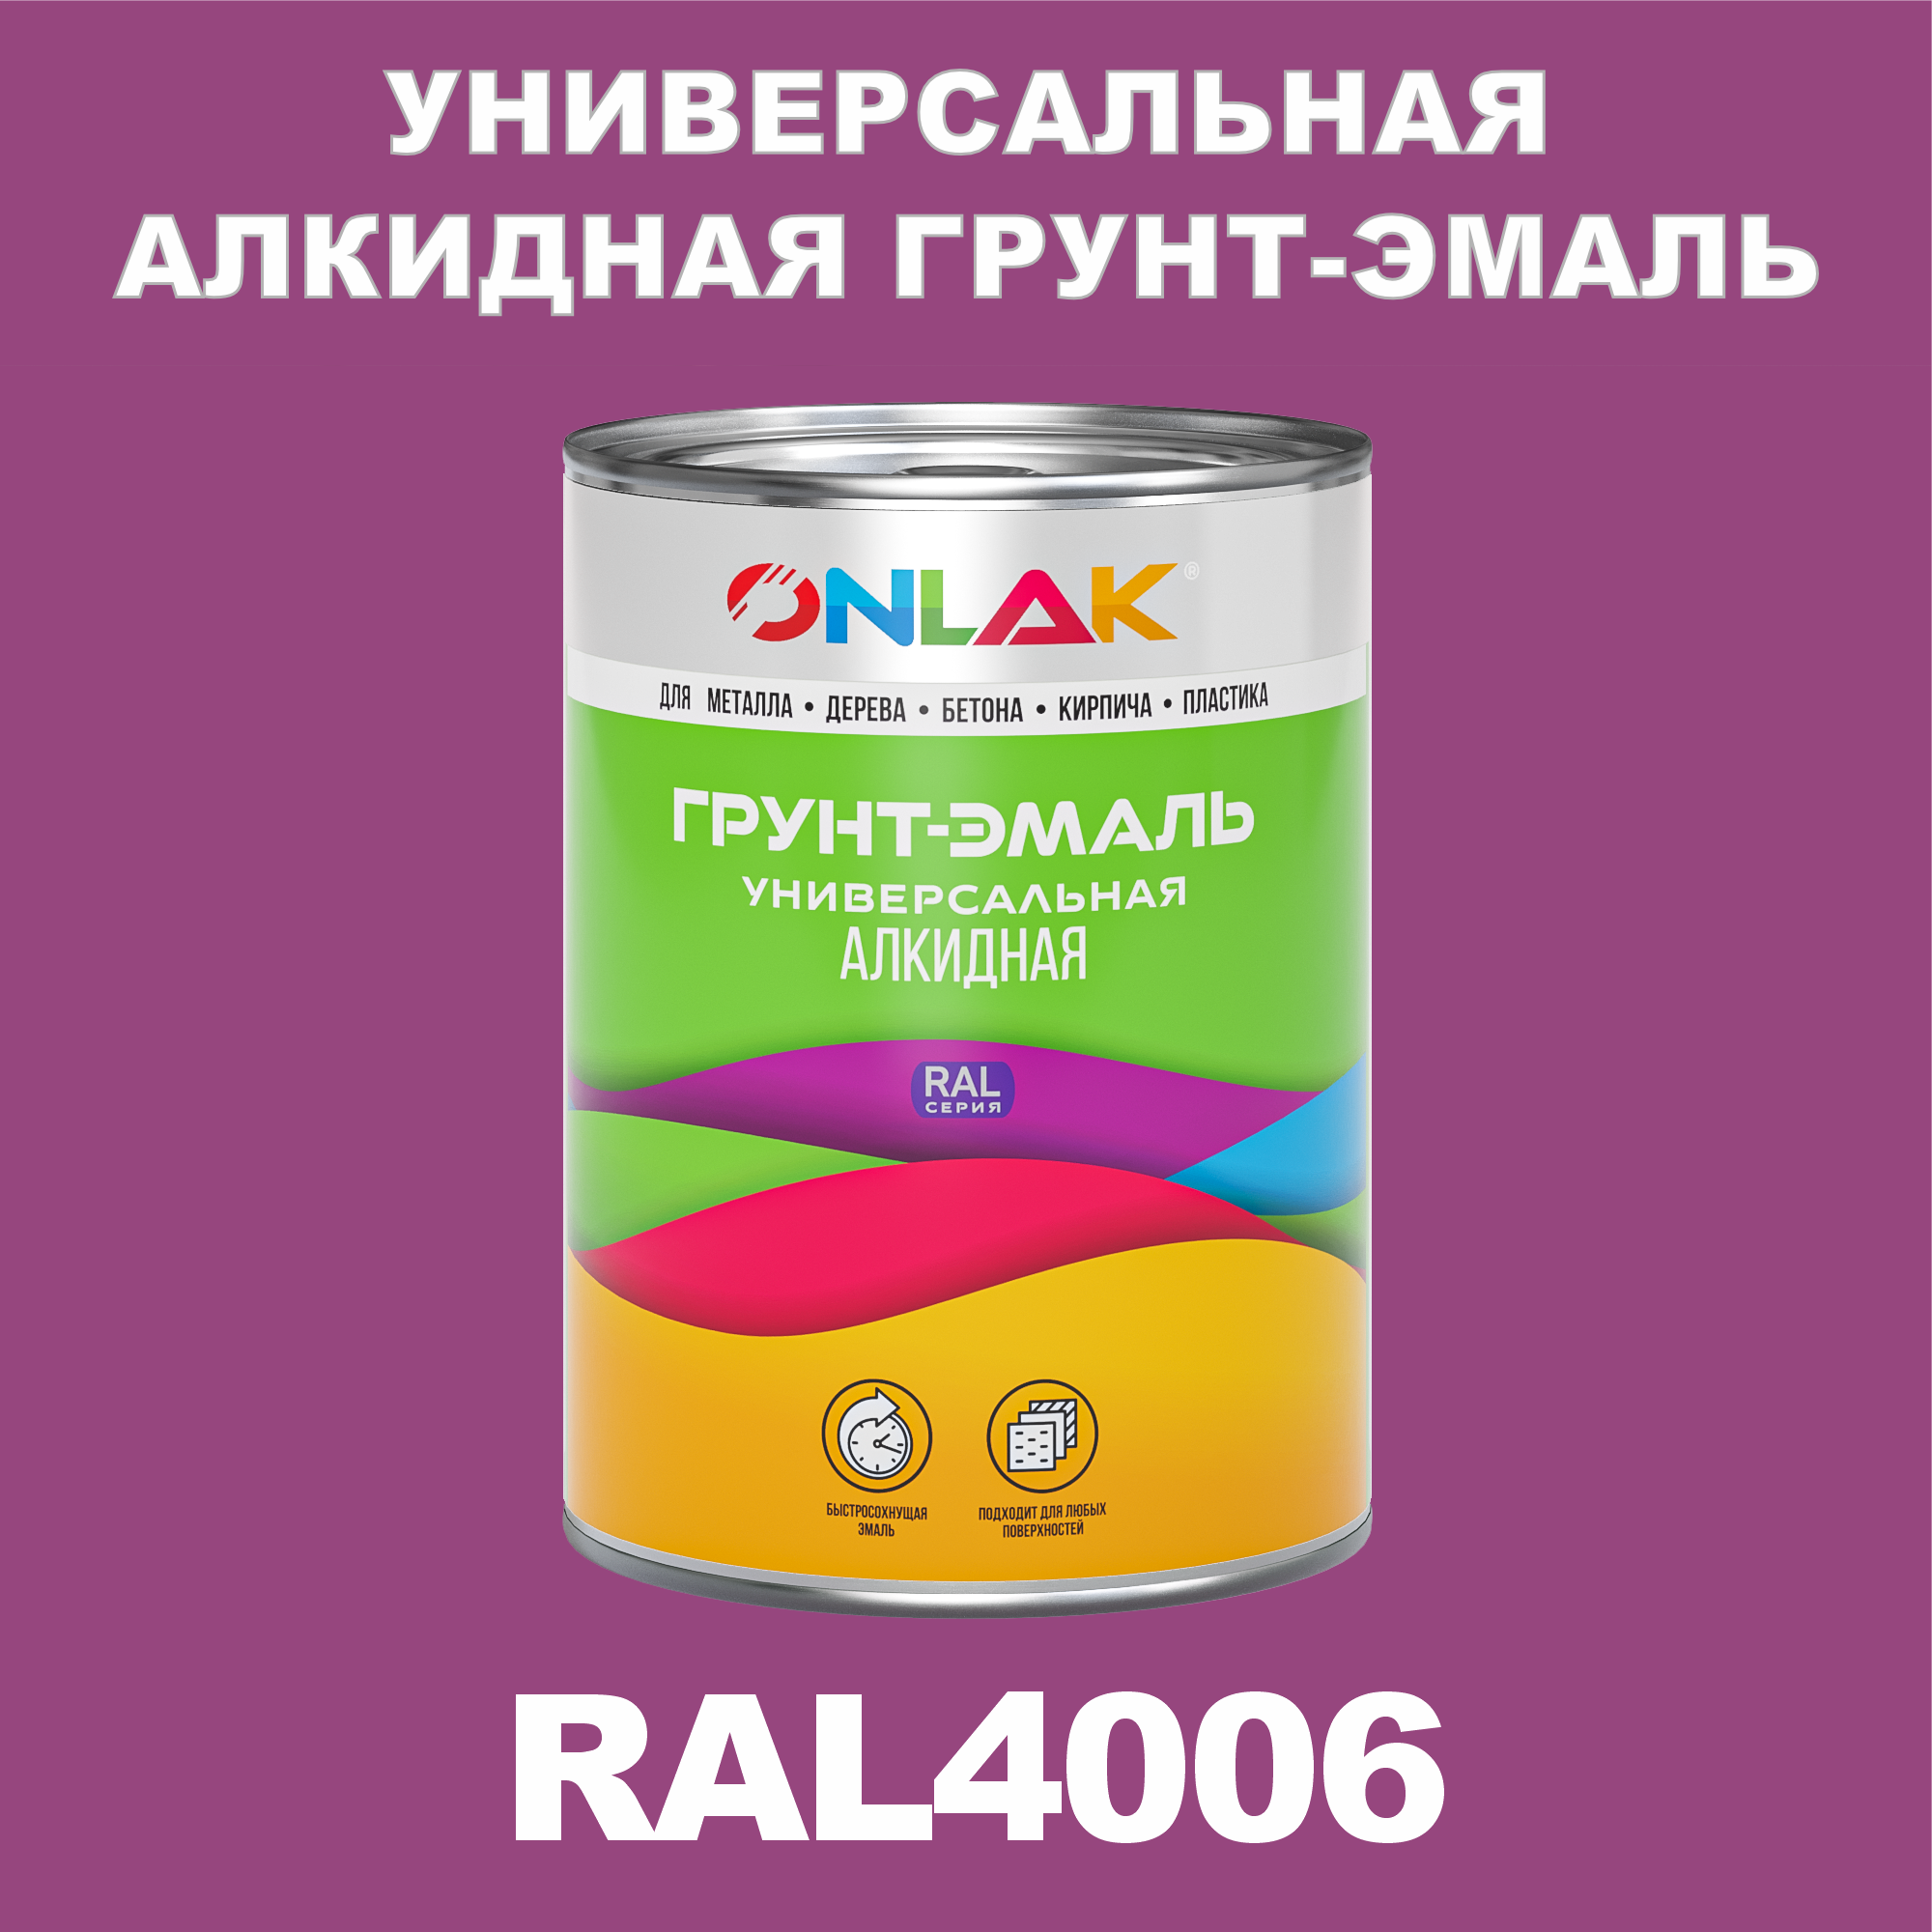 Грунт-эмаль ONLAK 1К RAL4006 антикоррозионная алкидная по металлу по ржавчине 1 кг